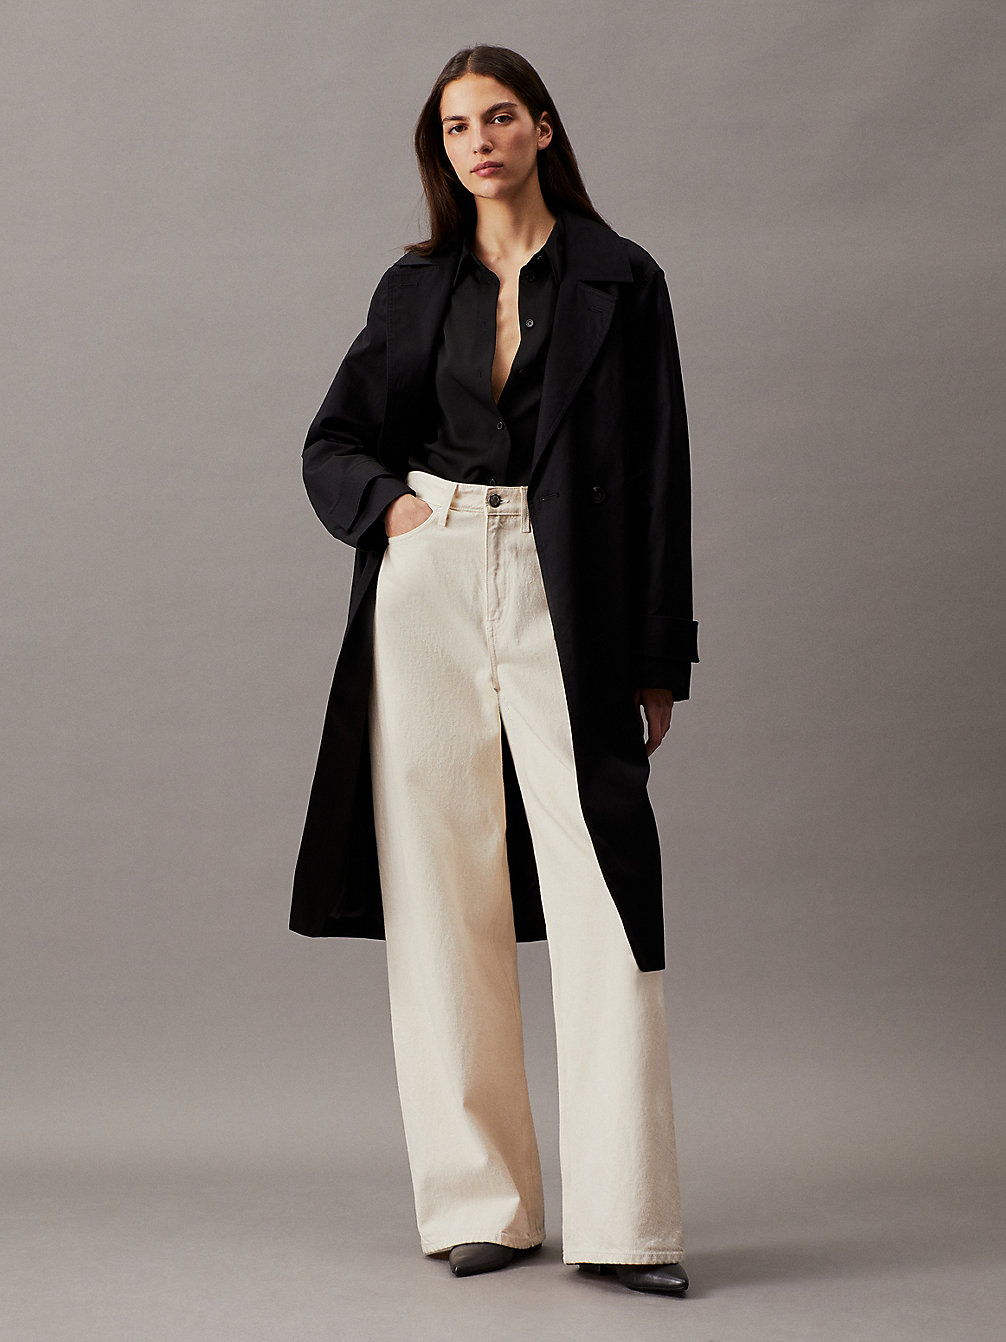 CK BLACK Cotton Twill Trench Coat undefined Women Calvin Klein